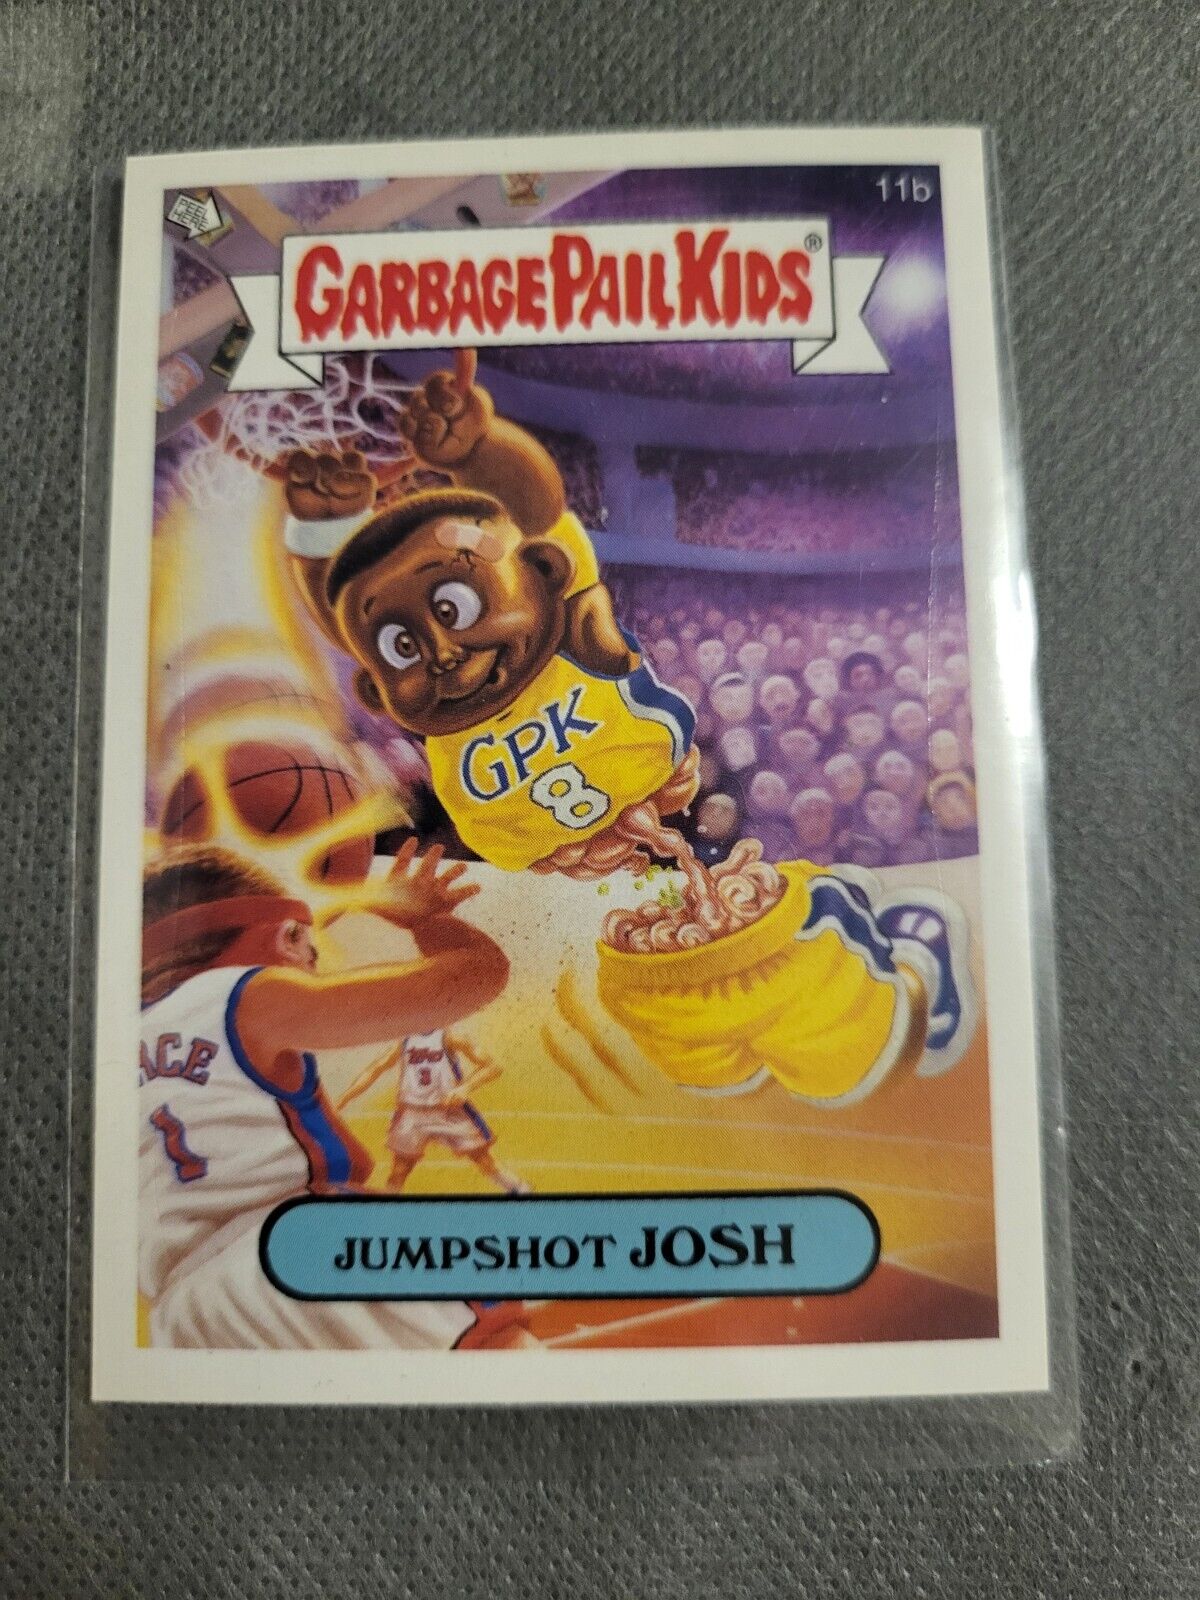 Jumpshot Josh 11b Garbage Pail Kids 2006 Topps Card Kobe Bryant GPK